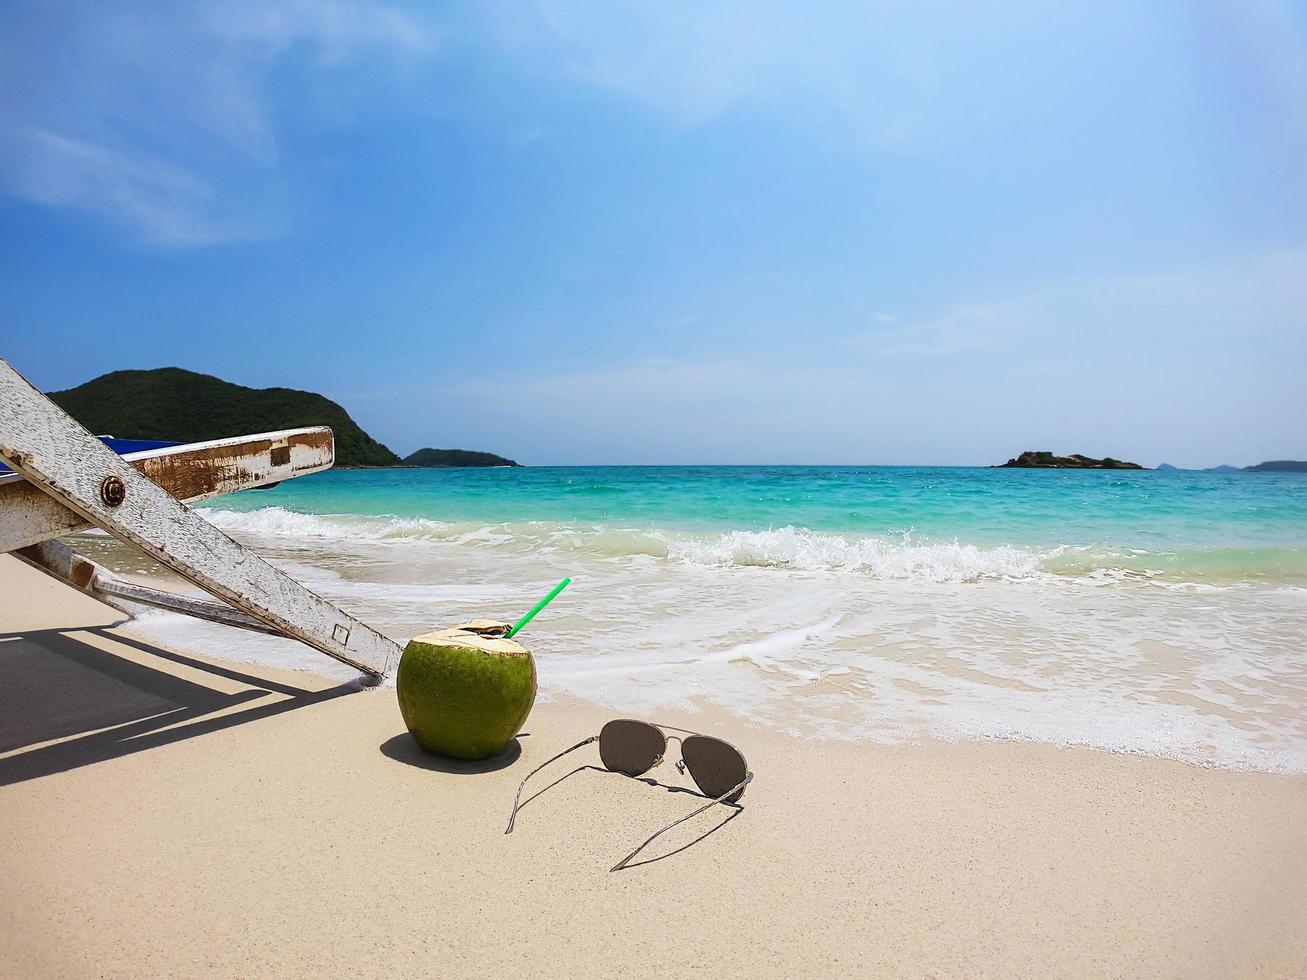 relájese en la silla de playa con coco fresco en una playa de arena limpia con mar azul y cielo despejado - concepto de relajación de fondo de naturaleza marina foto